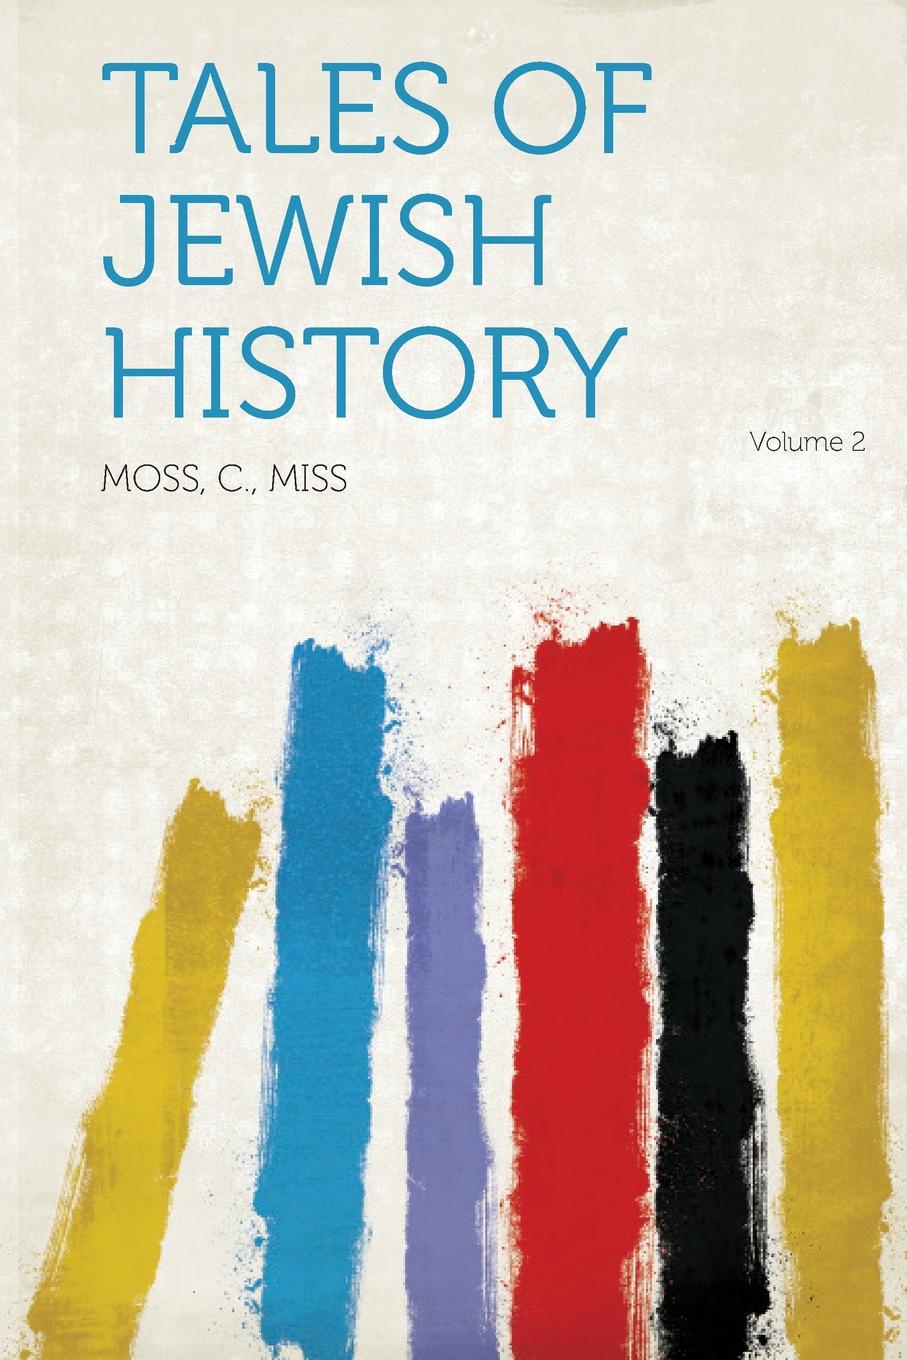 Tales of Jewish History Volume 2